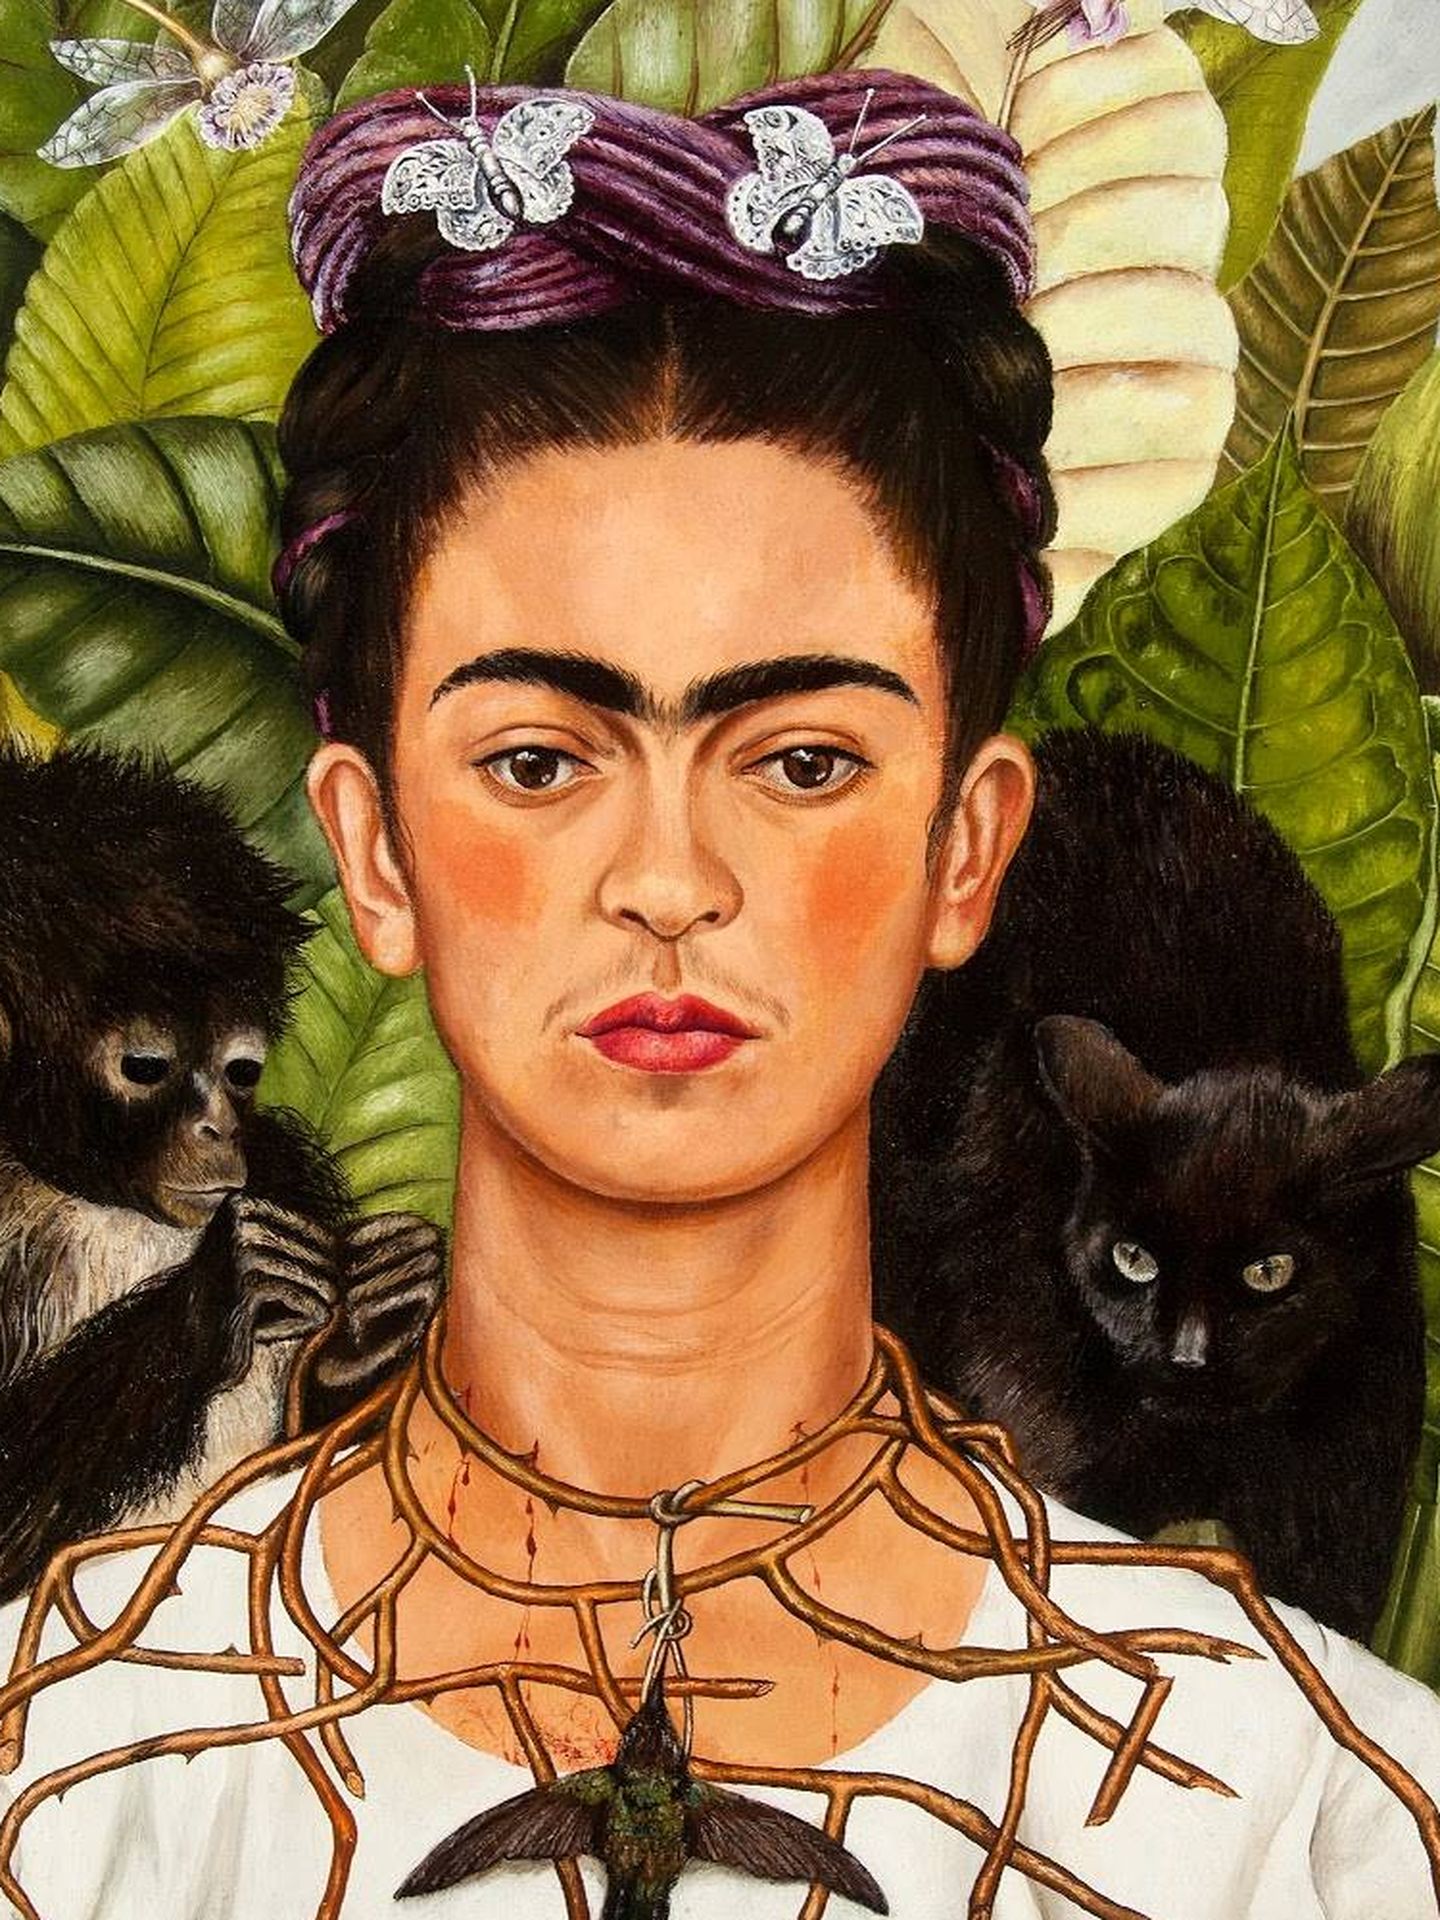 Autorretrato (con collar de espinas y colibrí). Frida Kahlo. 1940. Banco de México. Diego Rivera y Frida Kahlo Museums Trust